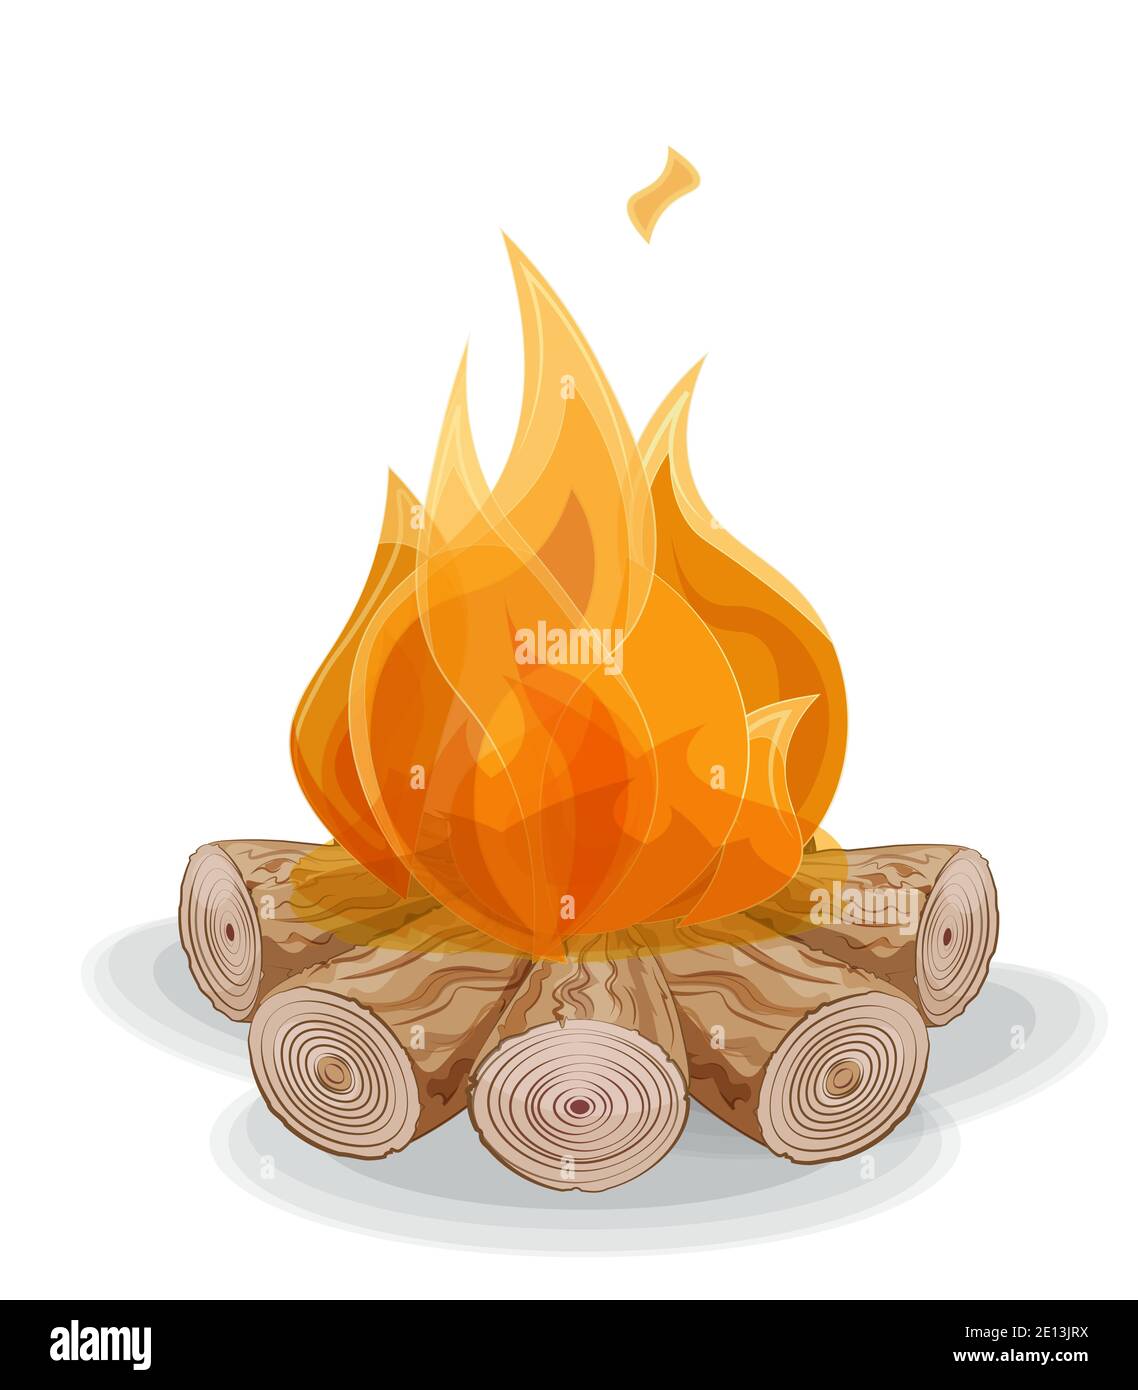 vecteur feu sur bois de chauffage, lutte en bois, pour cheminée ou feu, image à la main dessin style de dessin animé Illustration de Vecteur